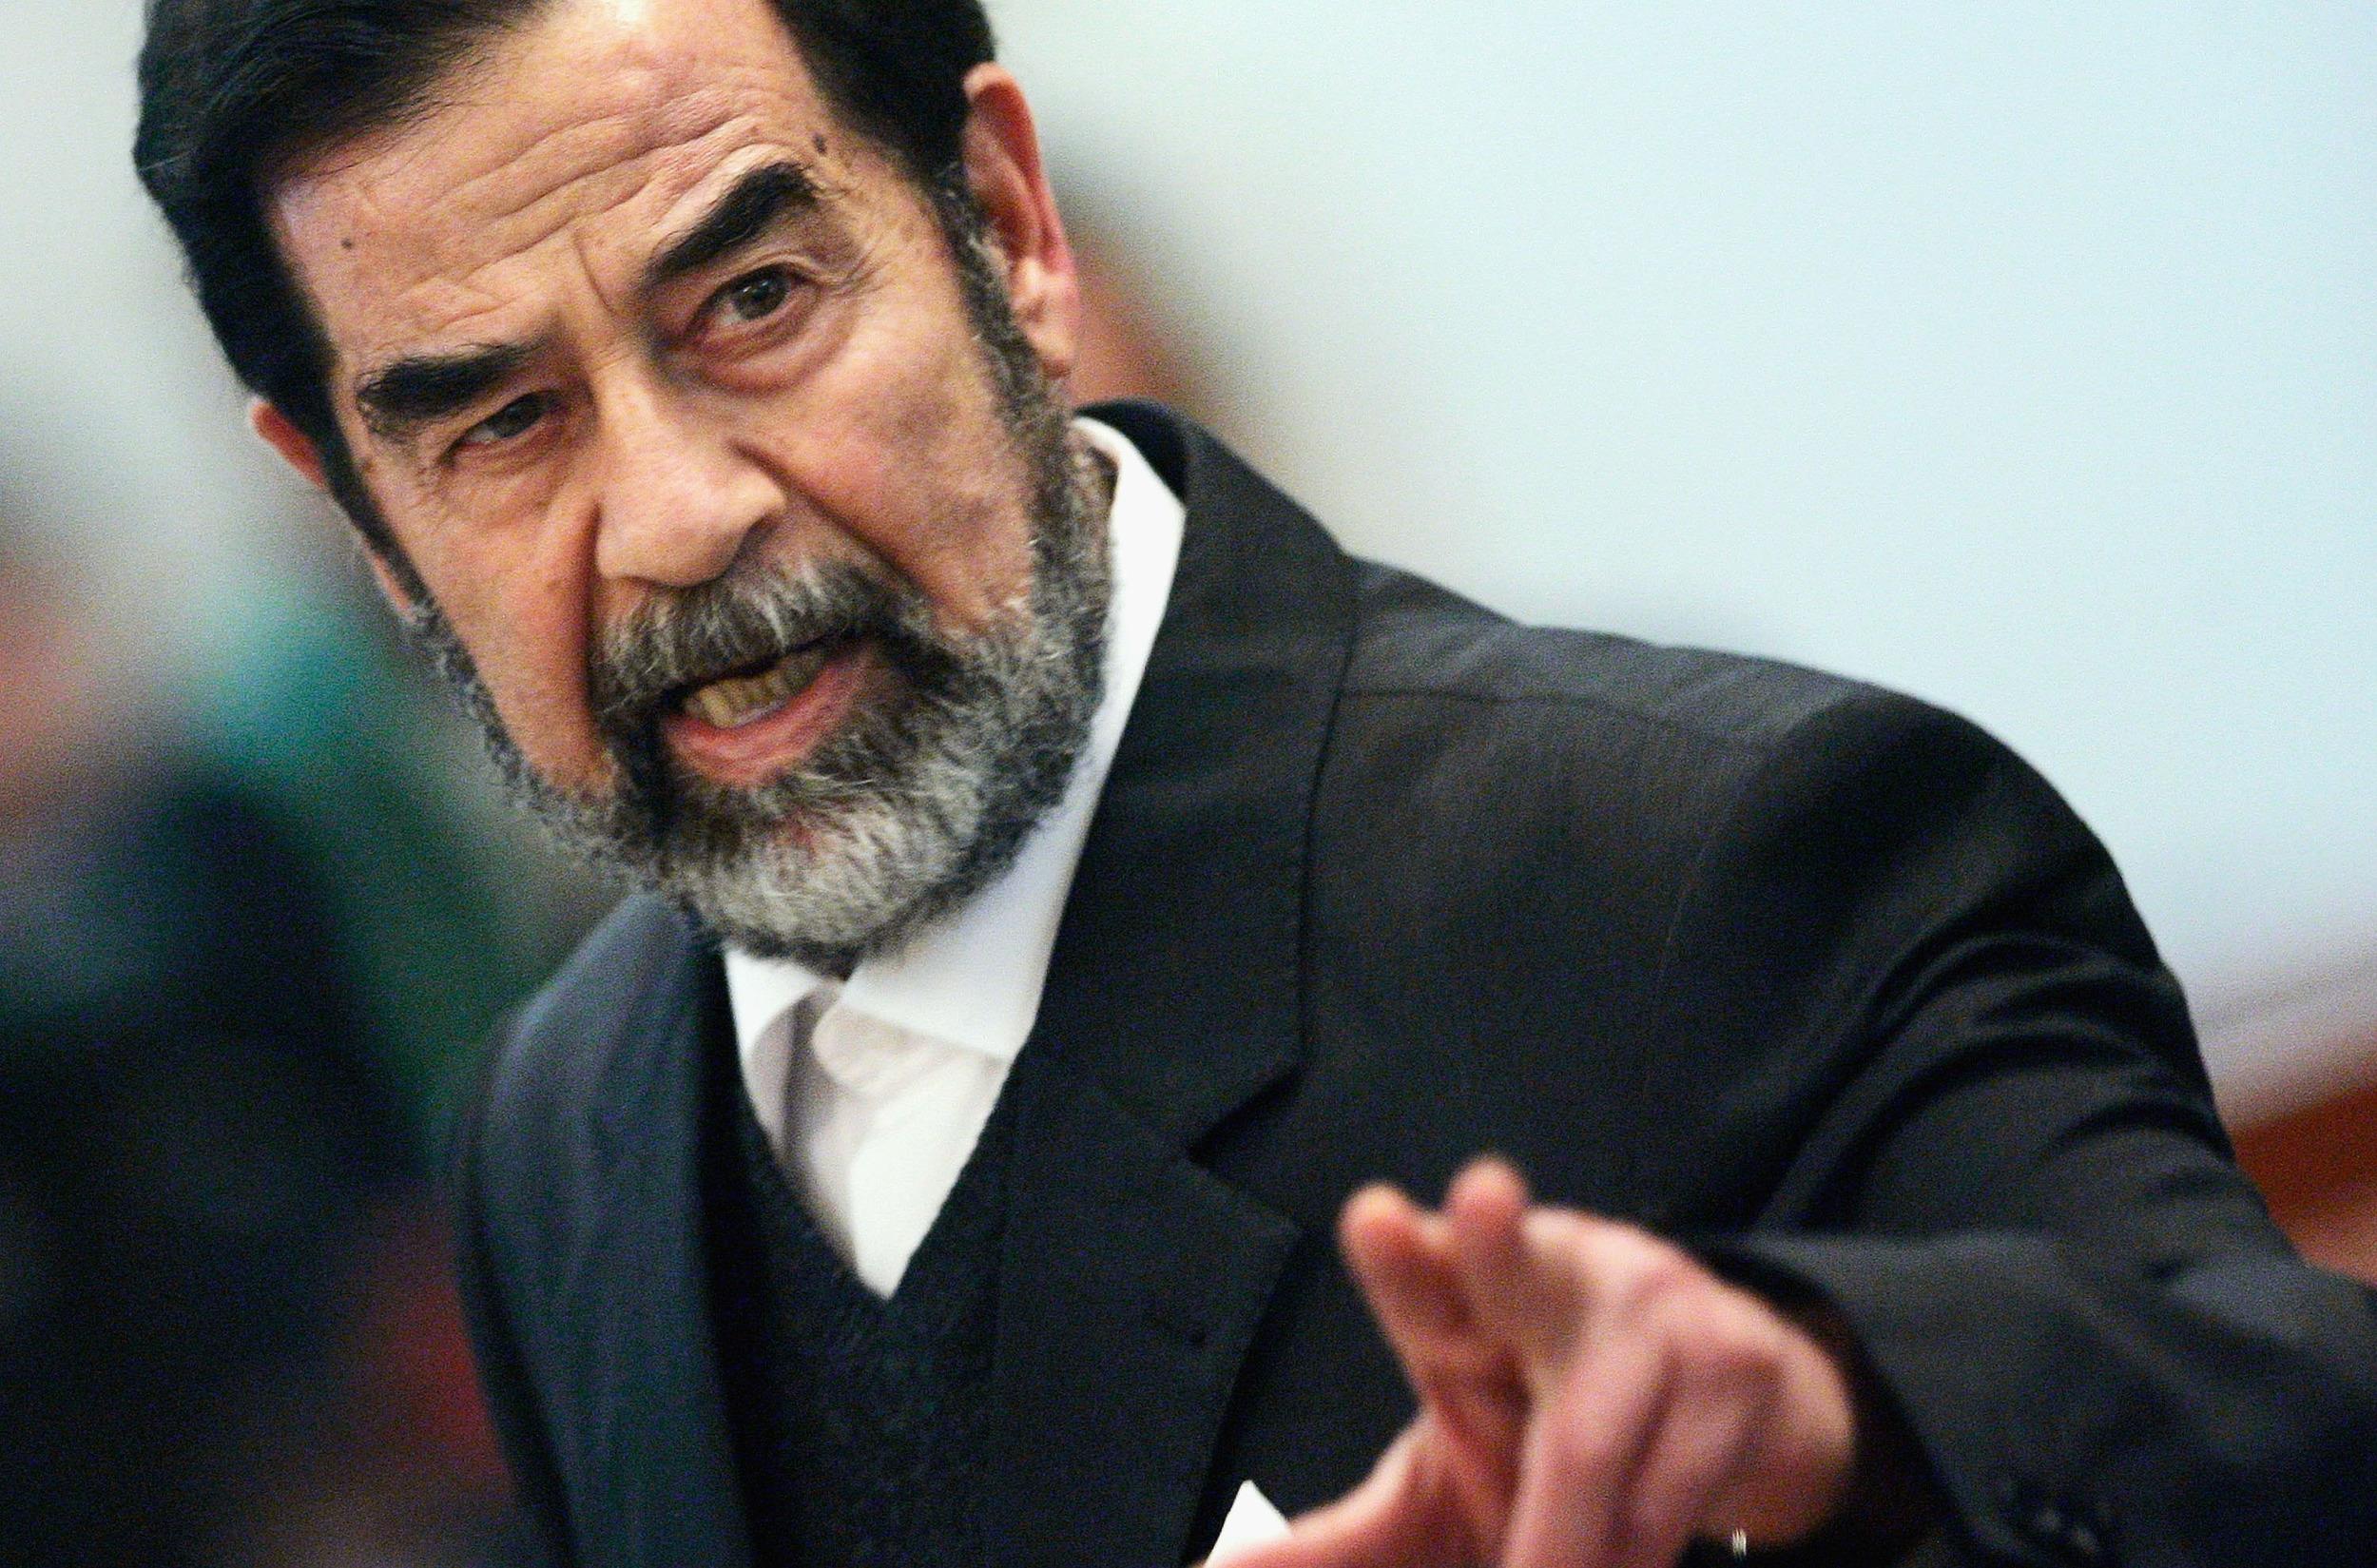 صور صدام حسين , صور الرئيس العراقي صدام حسين